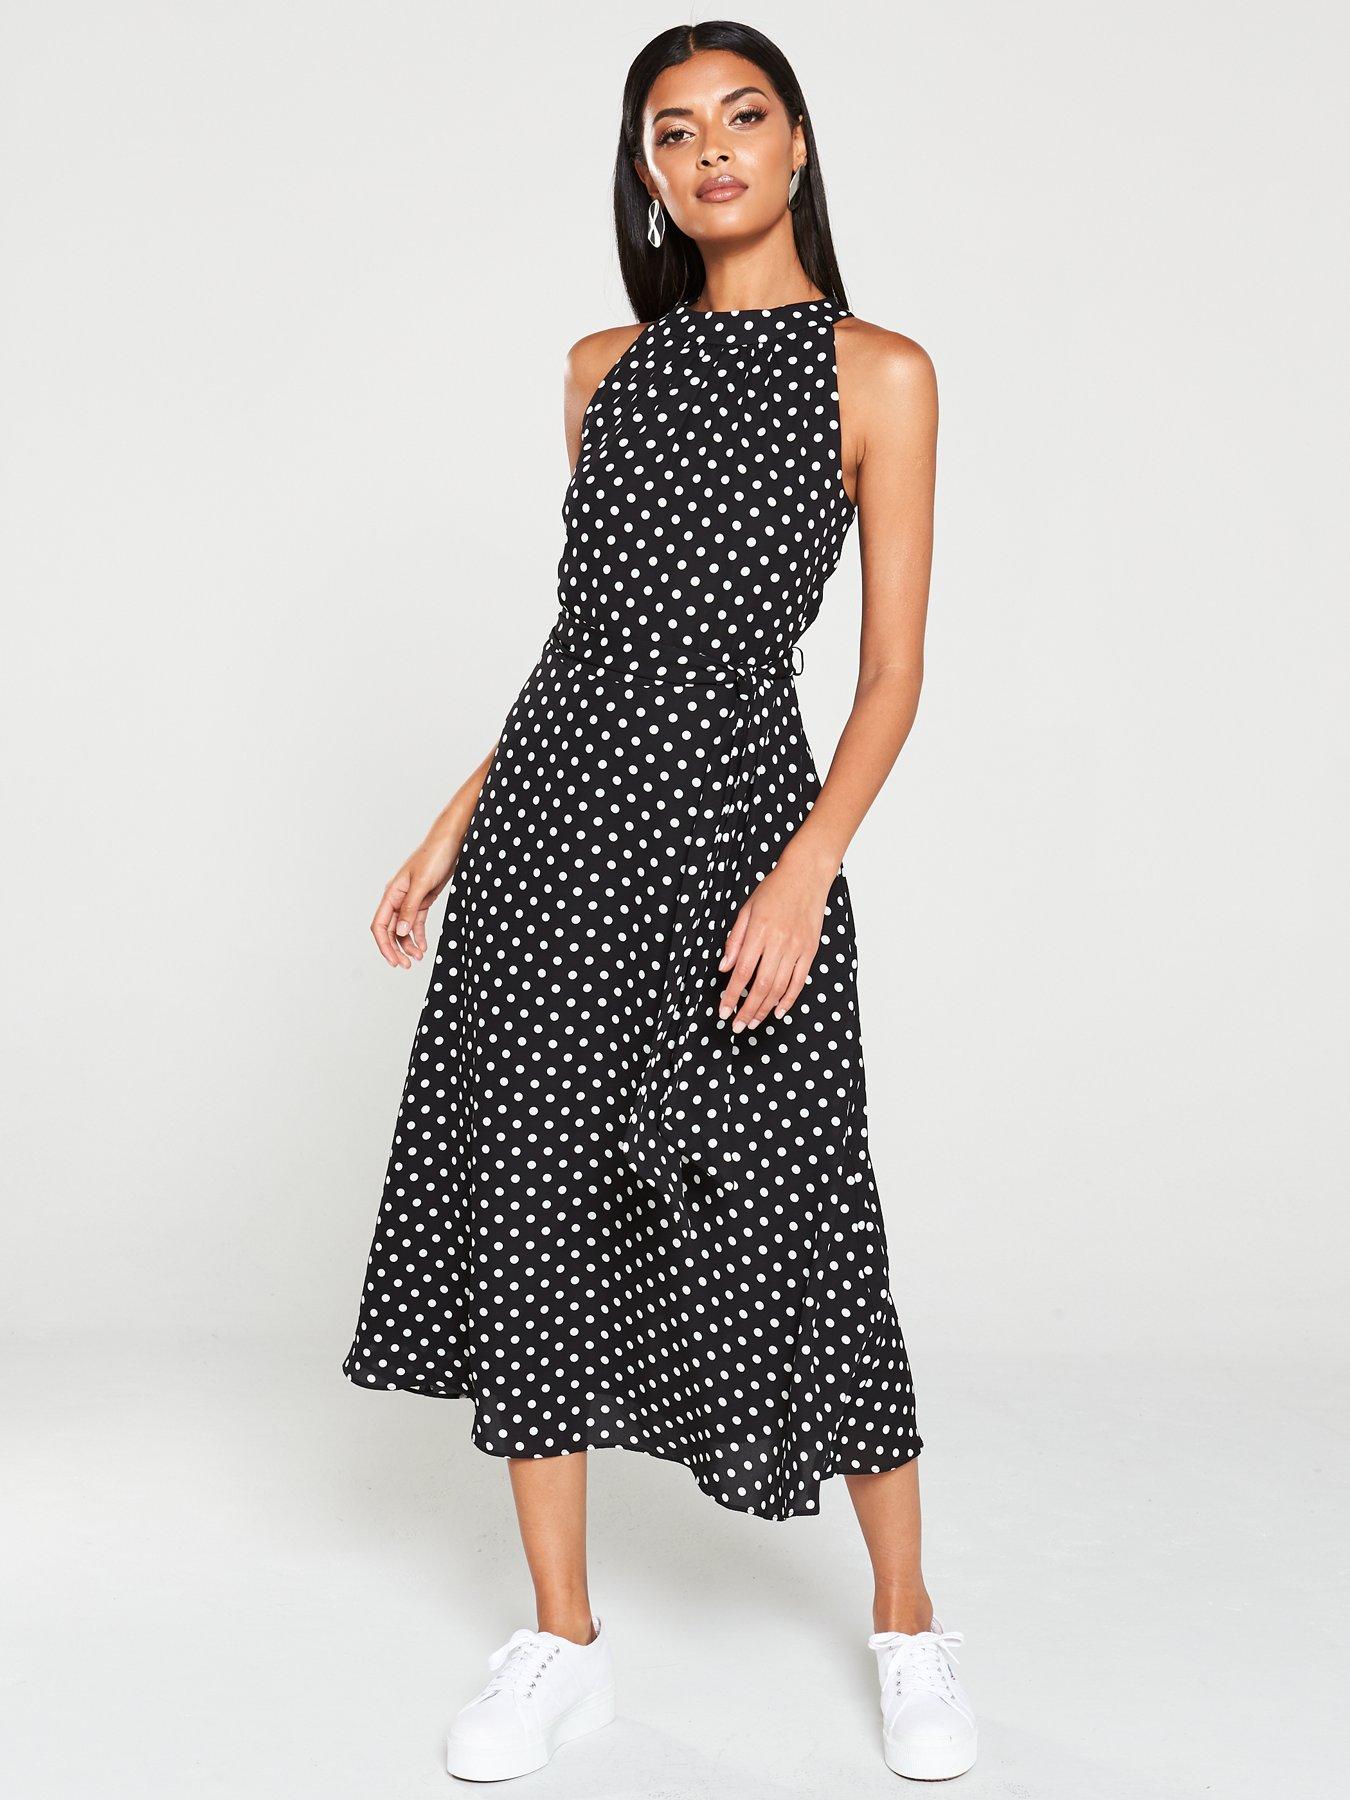 wallis black polka dot dress